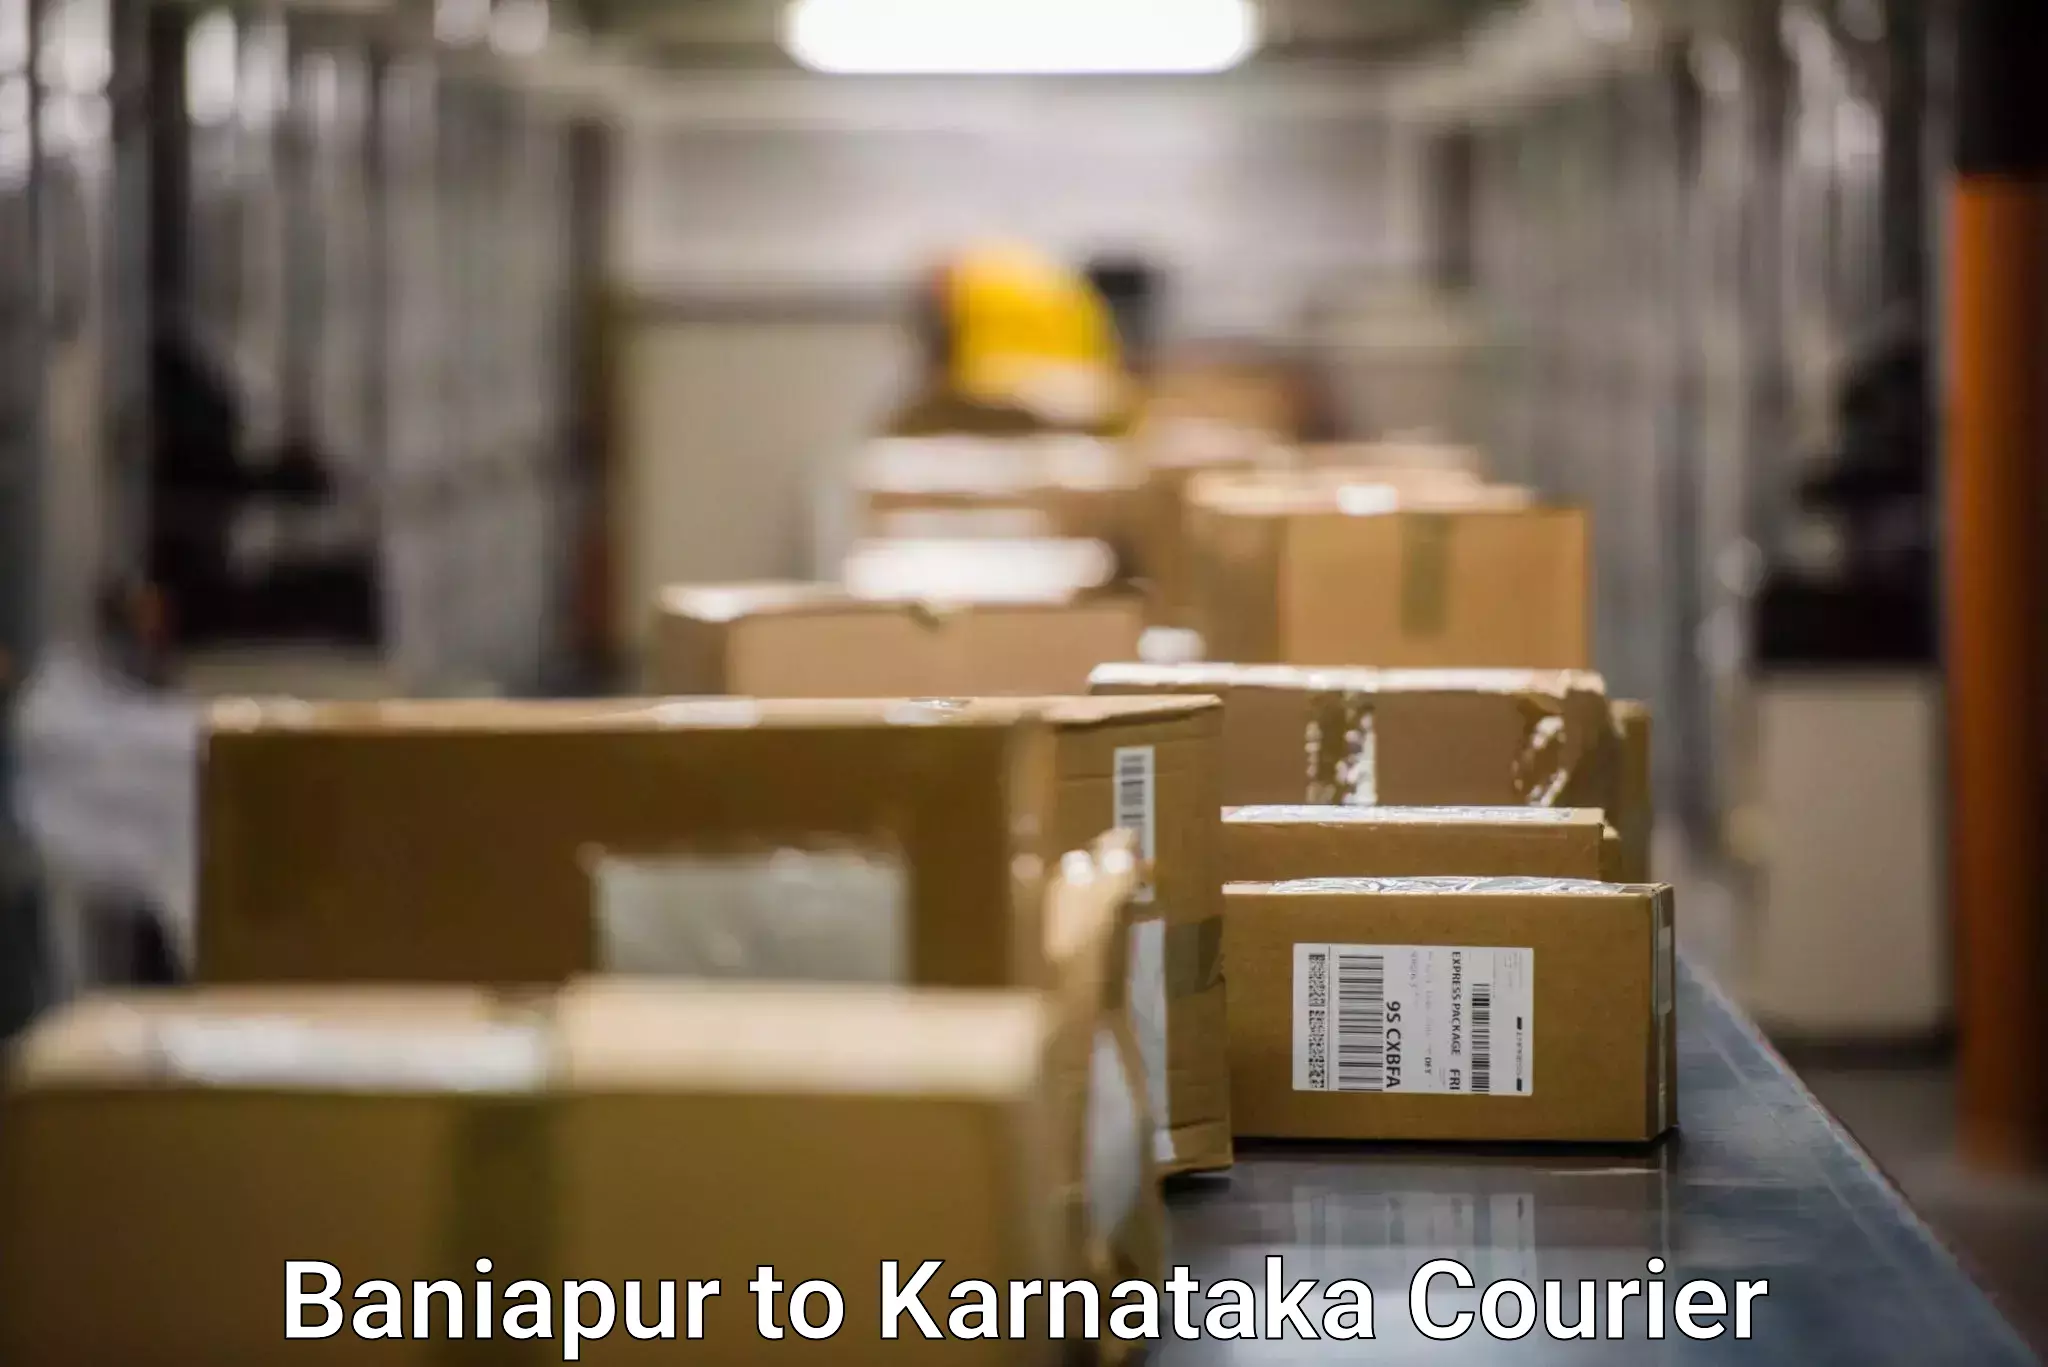 Individual parcel service Baniapur to Nelamangala